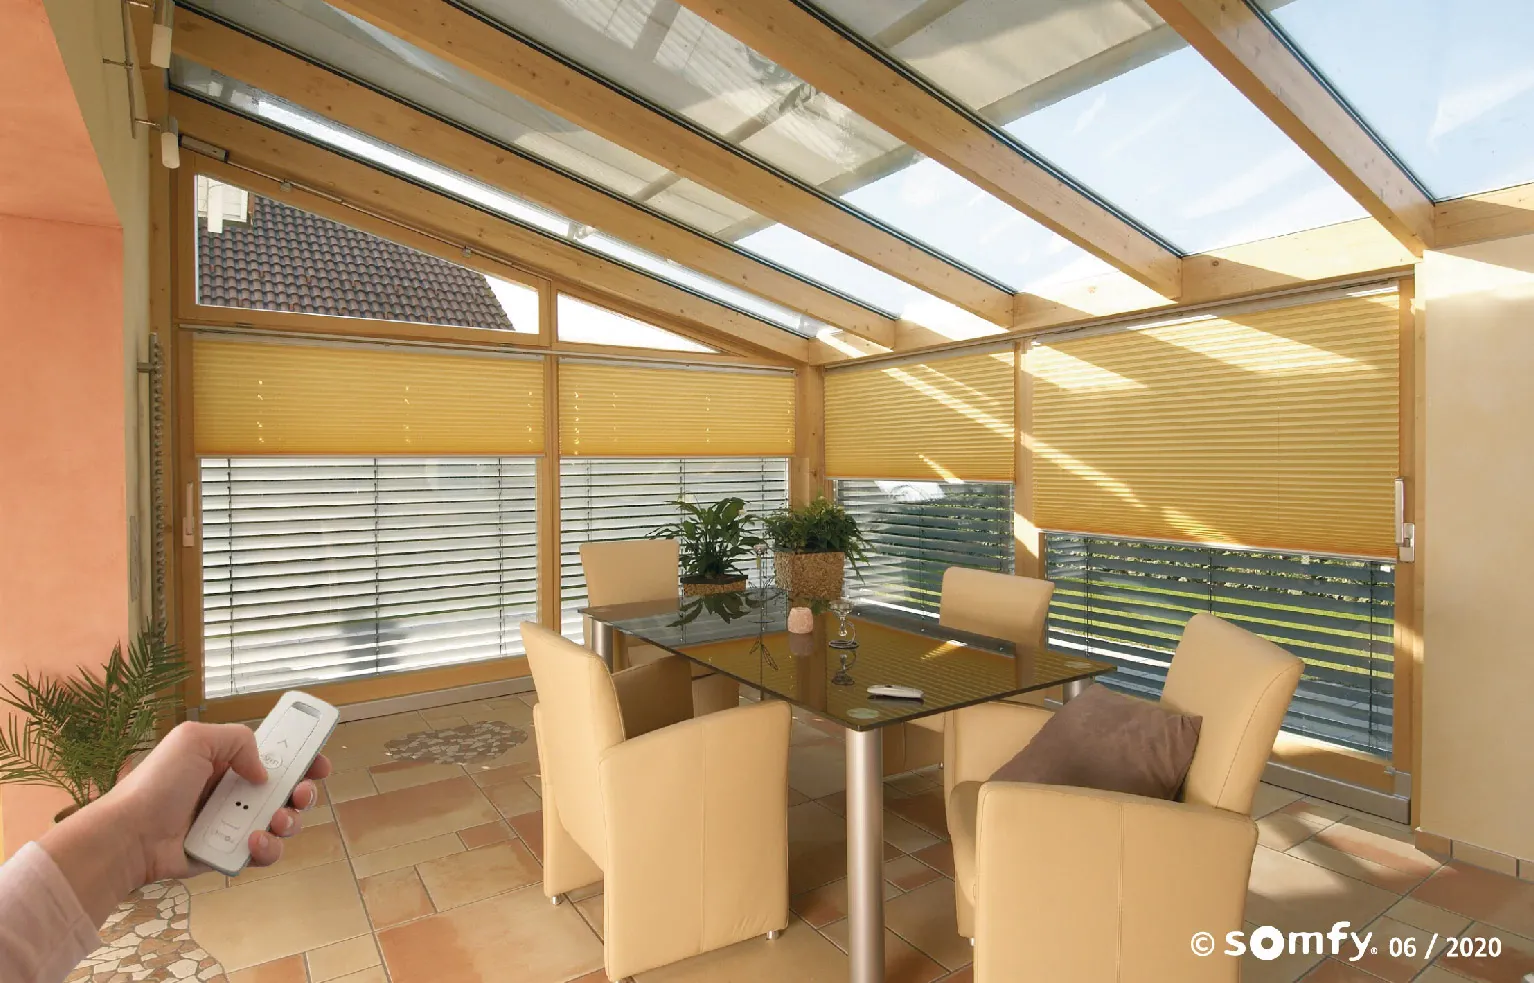 Automatización ideal para persianas en domos o altos muy grandes. Soluciones decorativas y de diseño exclusivo Gabín para dar vida a tus espacios.